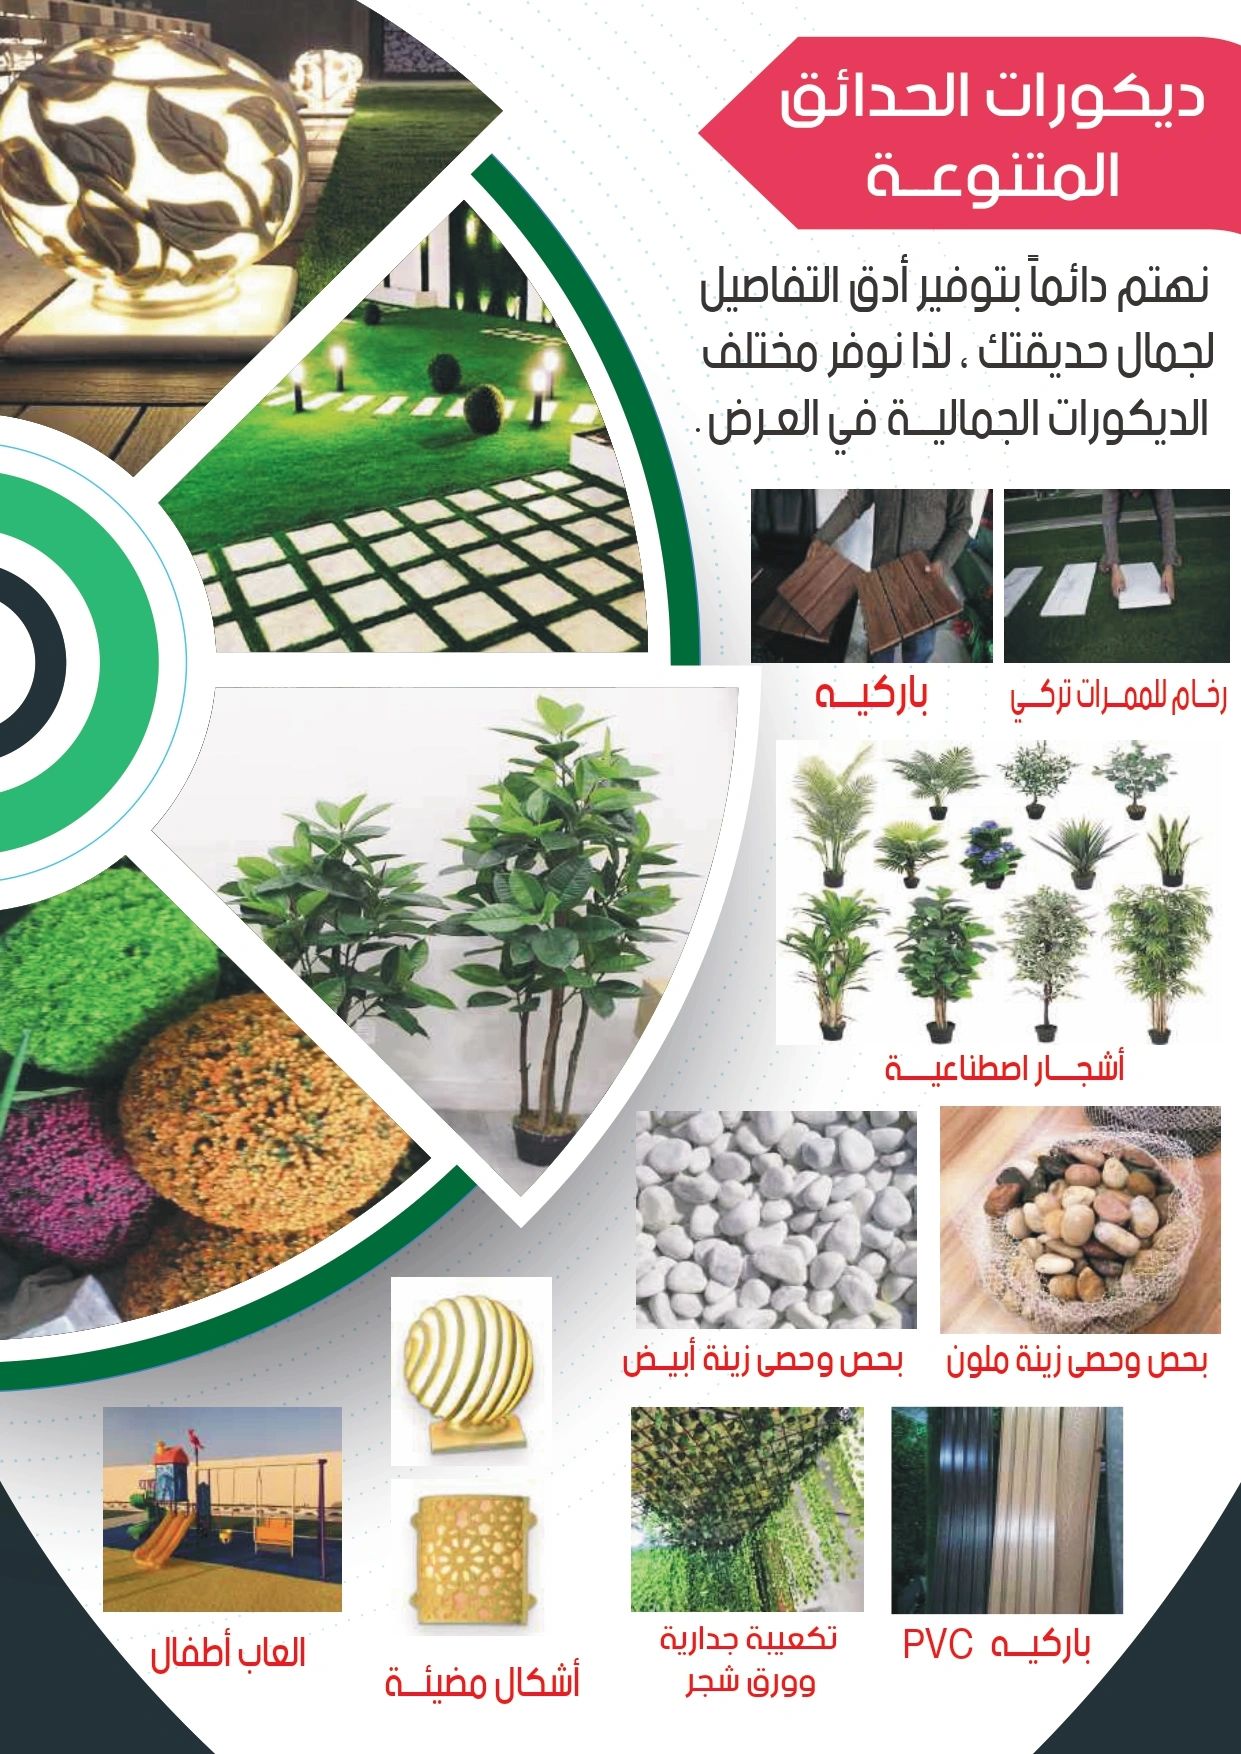  تنسيق حدائق الرياض - عشب صناعي - عشب جداري - بديل الخشب - بديل الرخام - مظلات - شلالات 